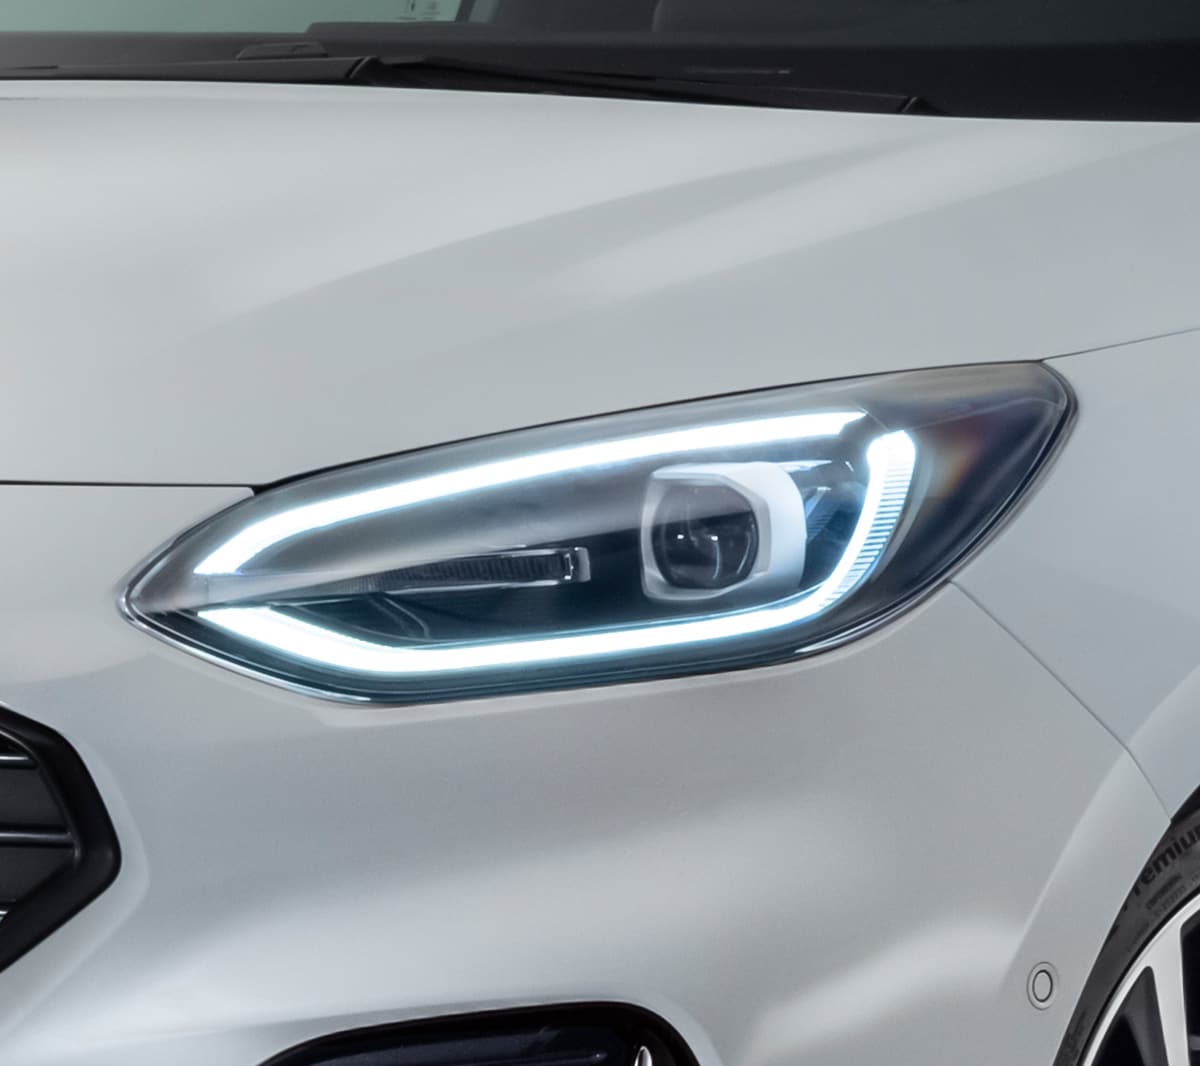 Ford Fiesta in Weiss. Nahansicht der Front mit Fokus auf den LED-Scheinwerfer.